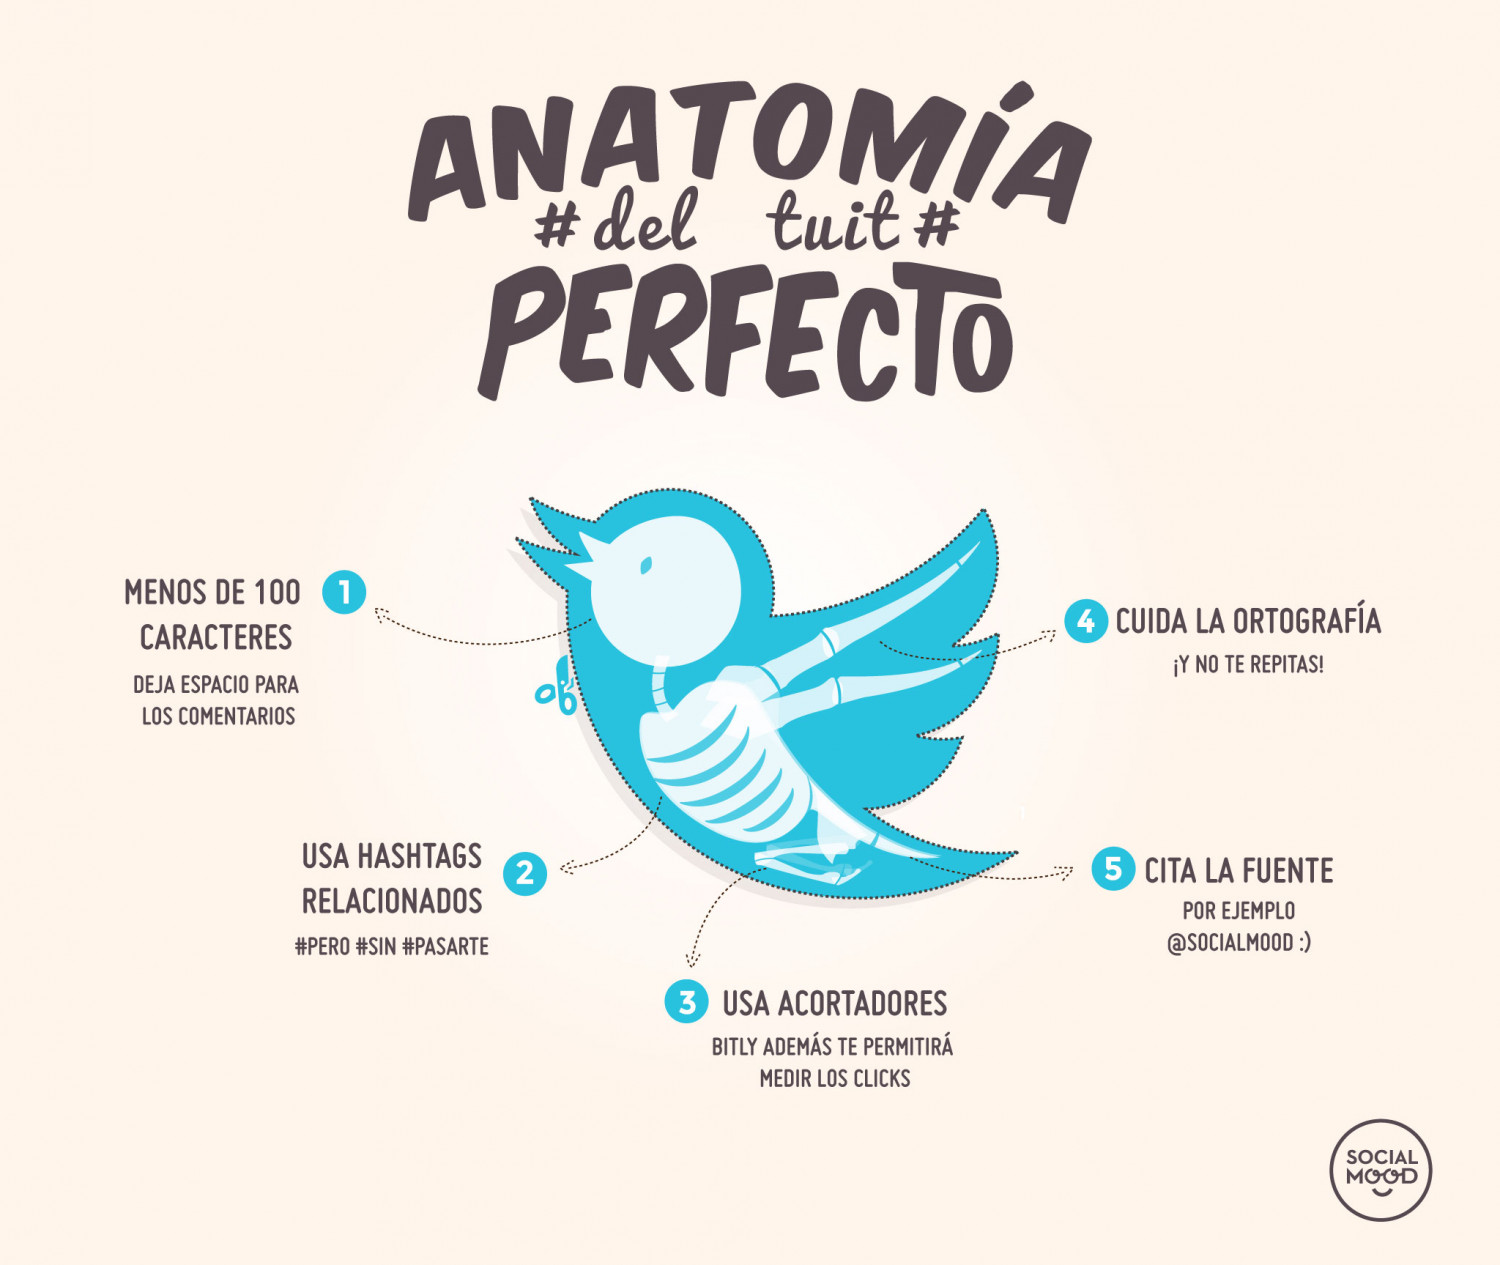 Anatomía del tuit perfecto Infographic